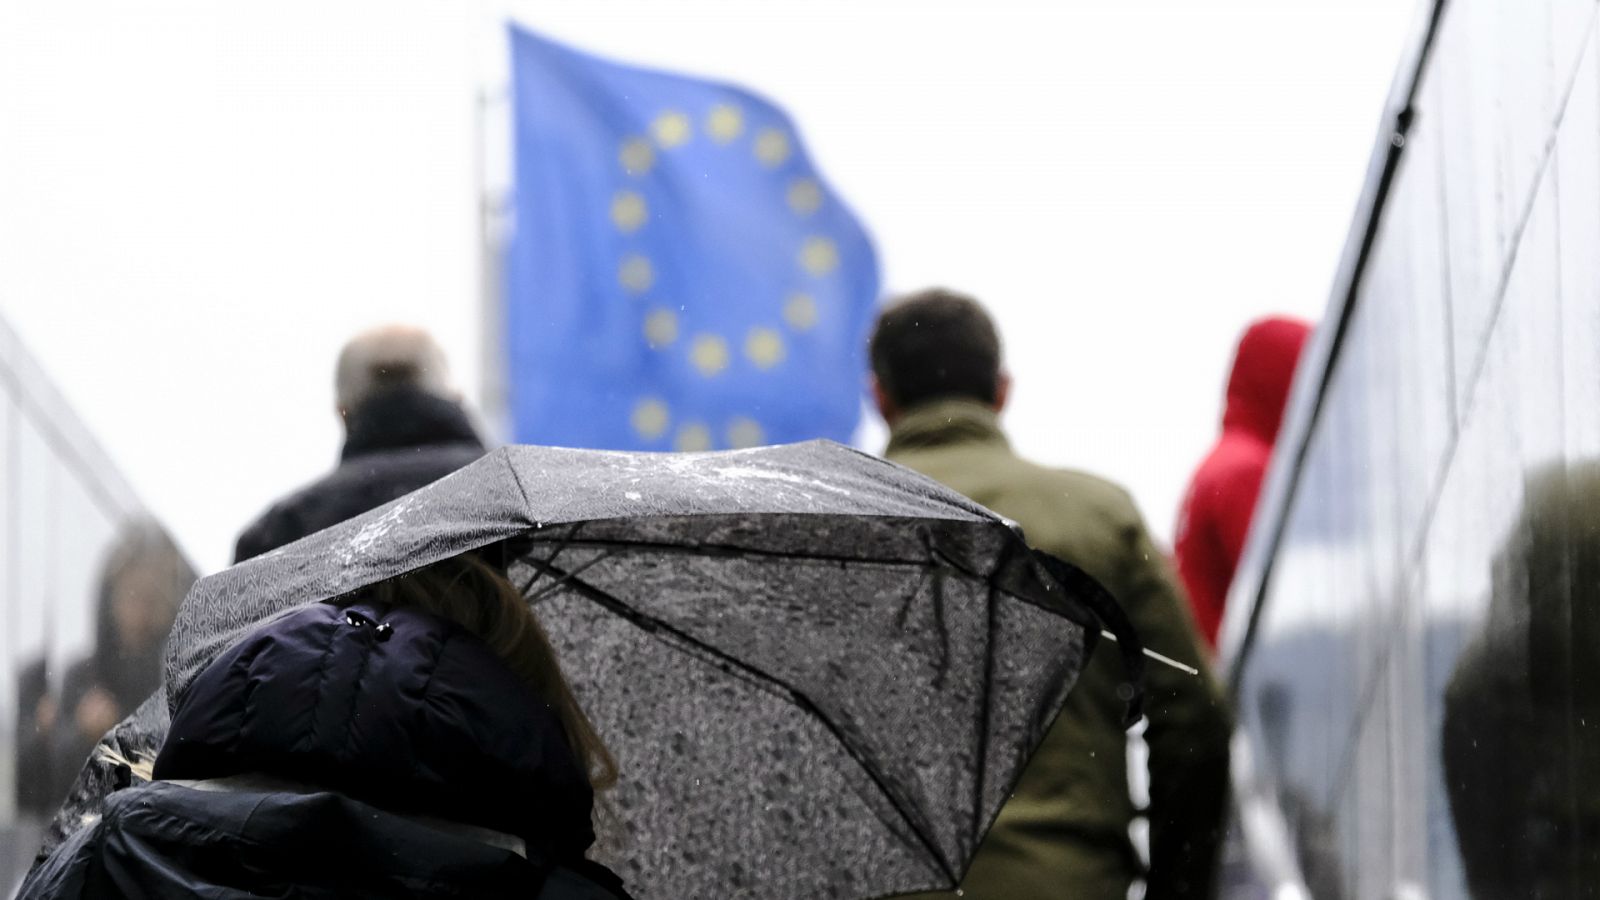 14 horas - La UE pide a los países miembros que refuercen la sanidad pública y apoyen a los hogares desfavorecidos - Escuchar ahora